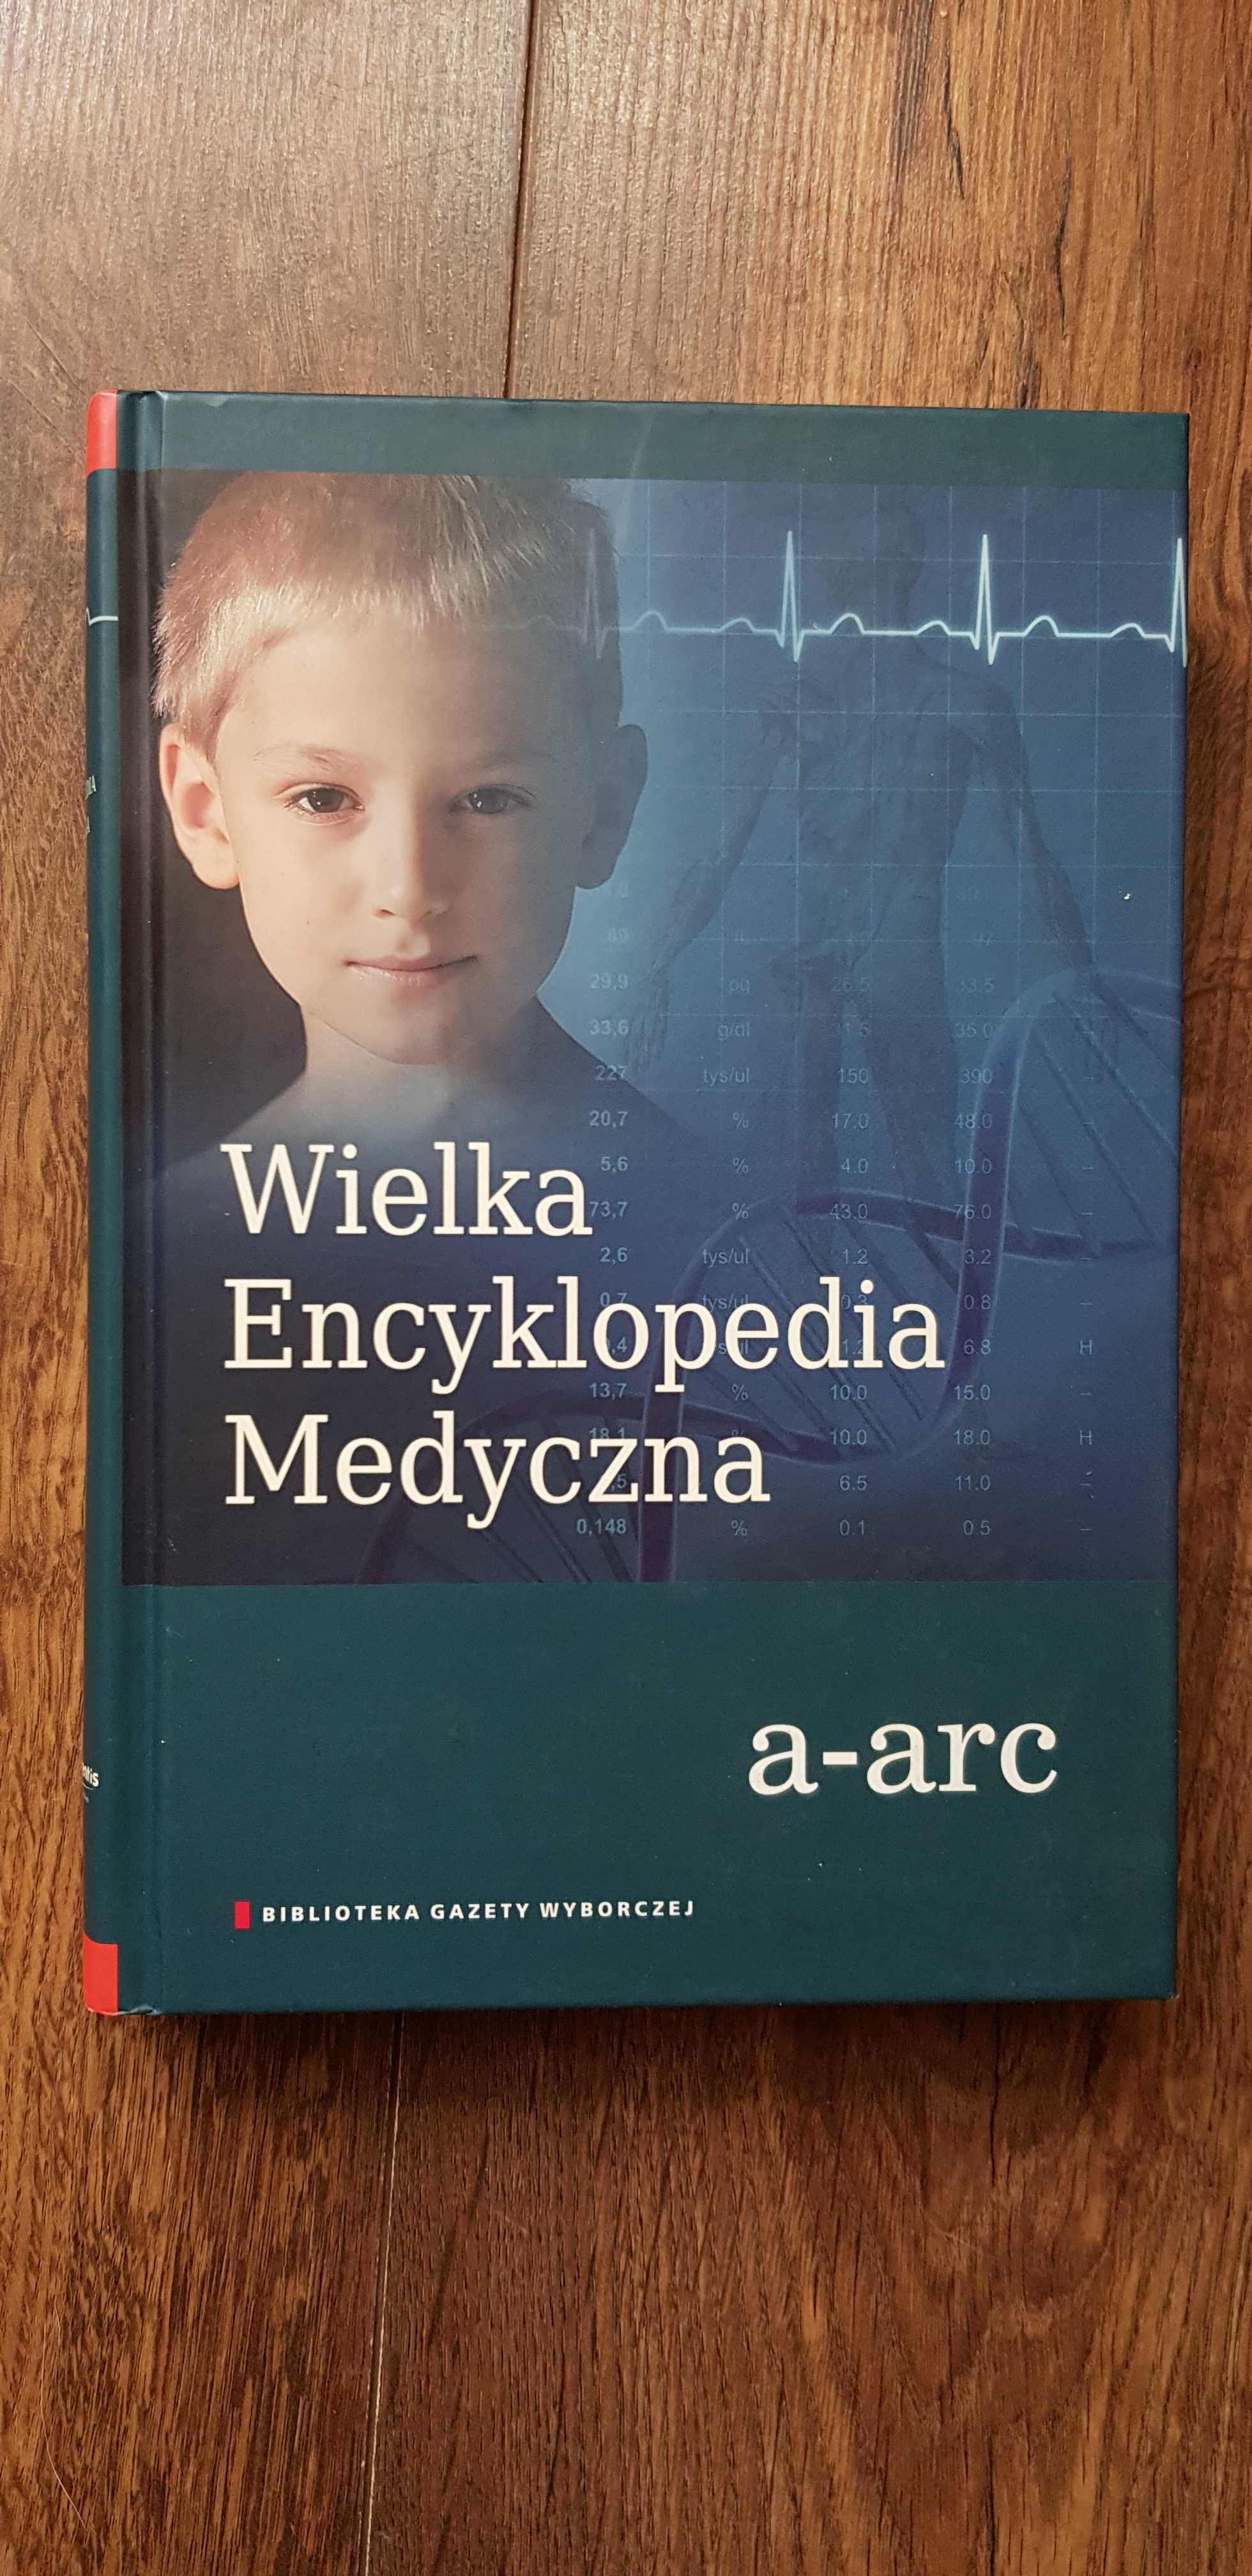 Wielka encyklopedia medyczna a-arc